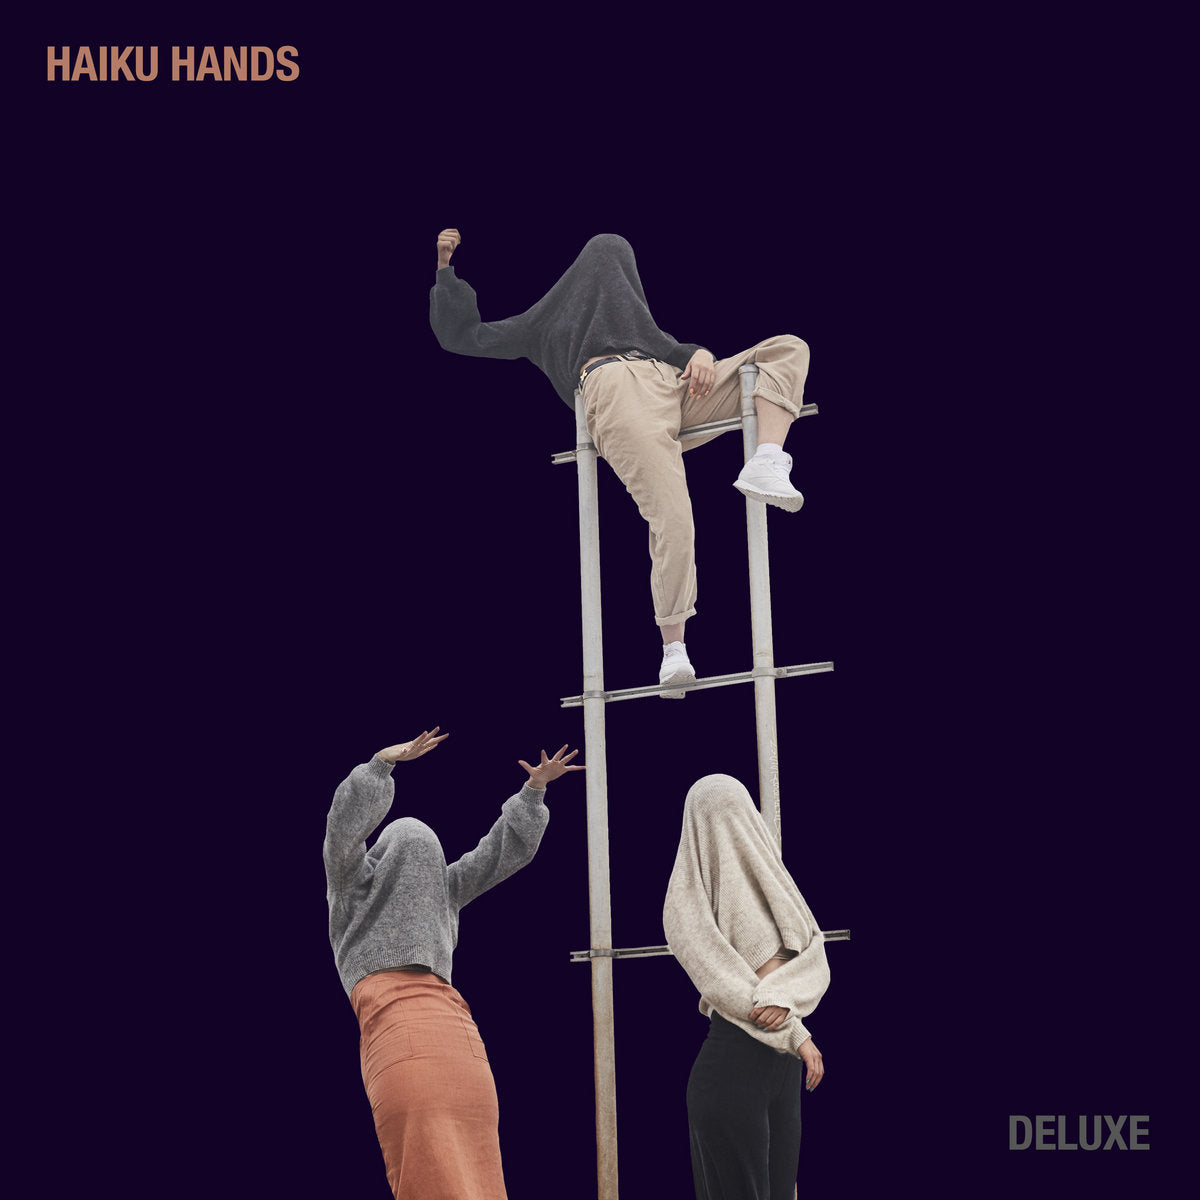 Haiku Hands (Deluxe)